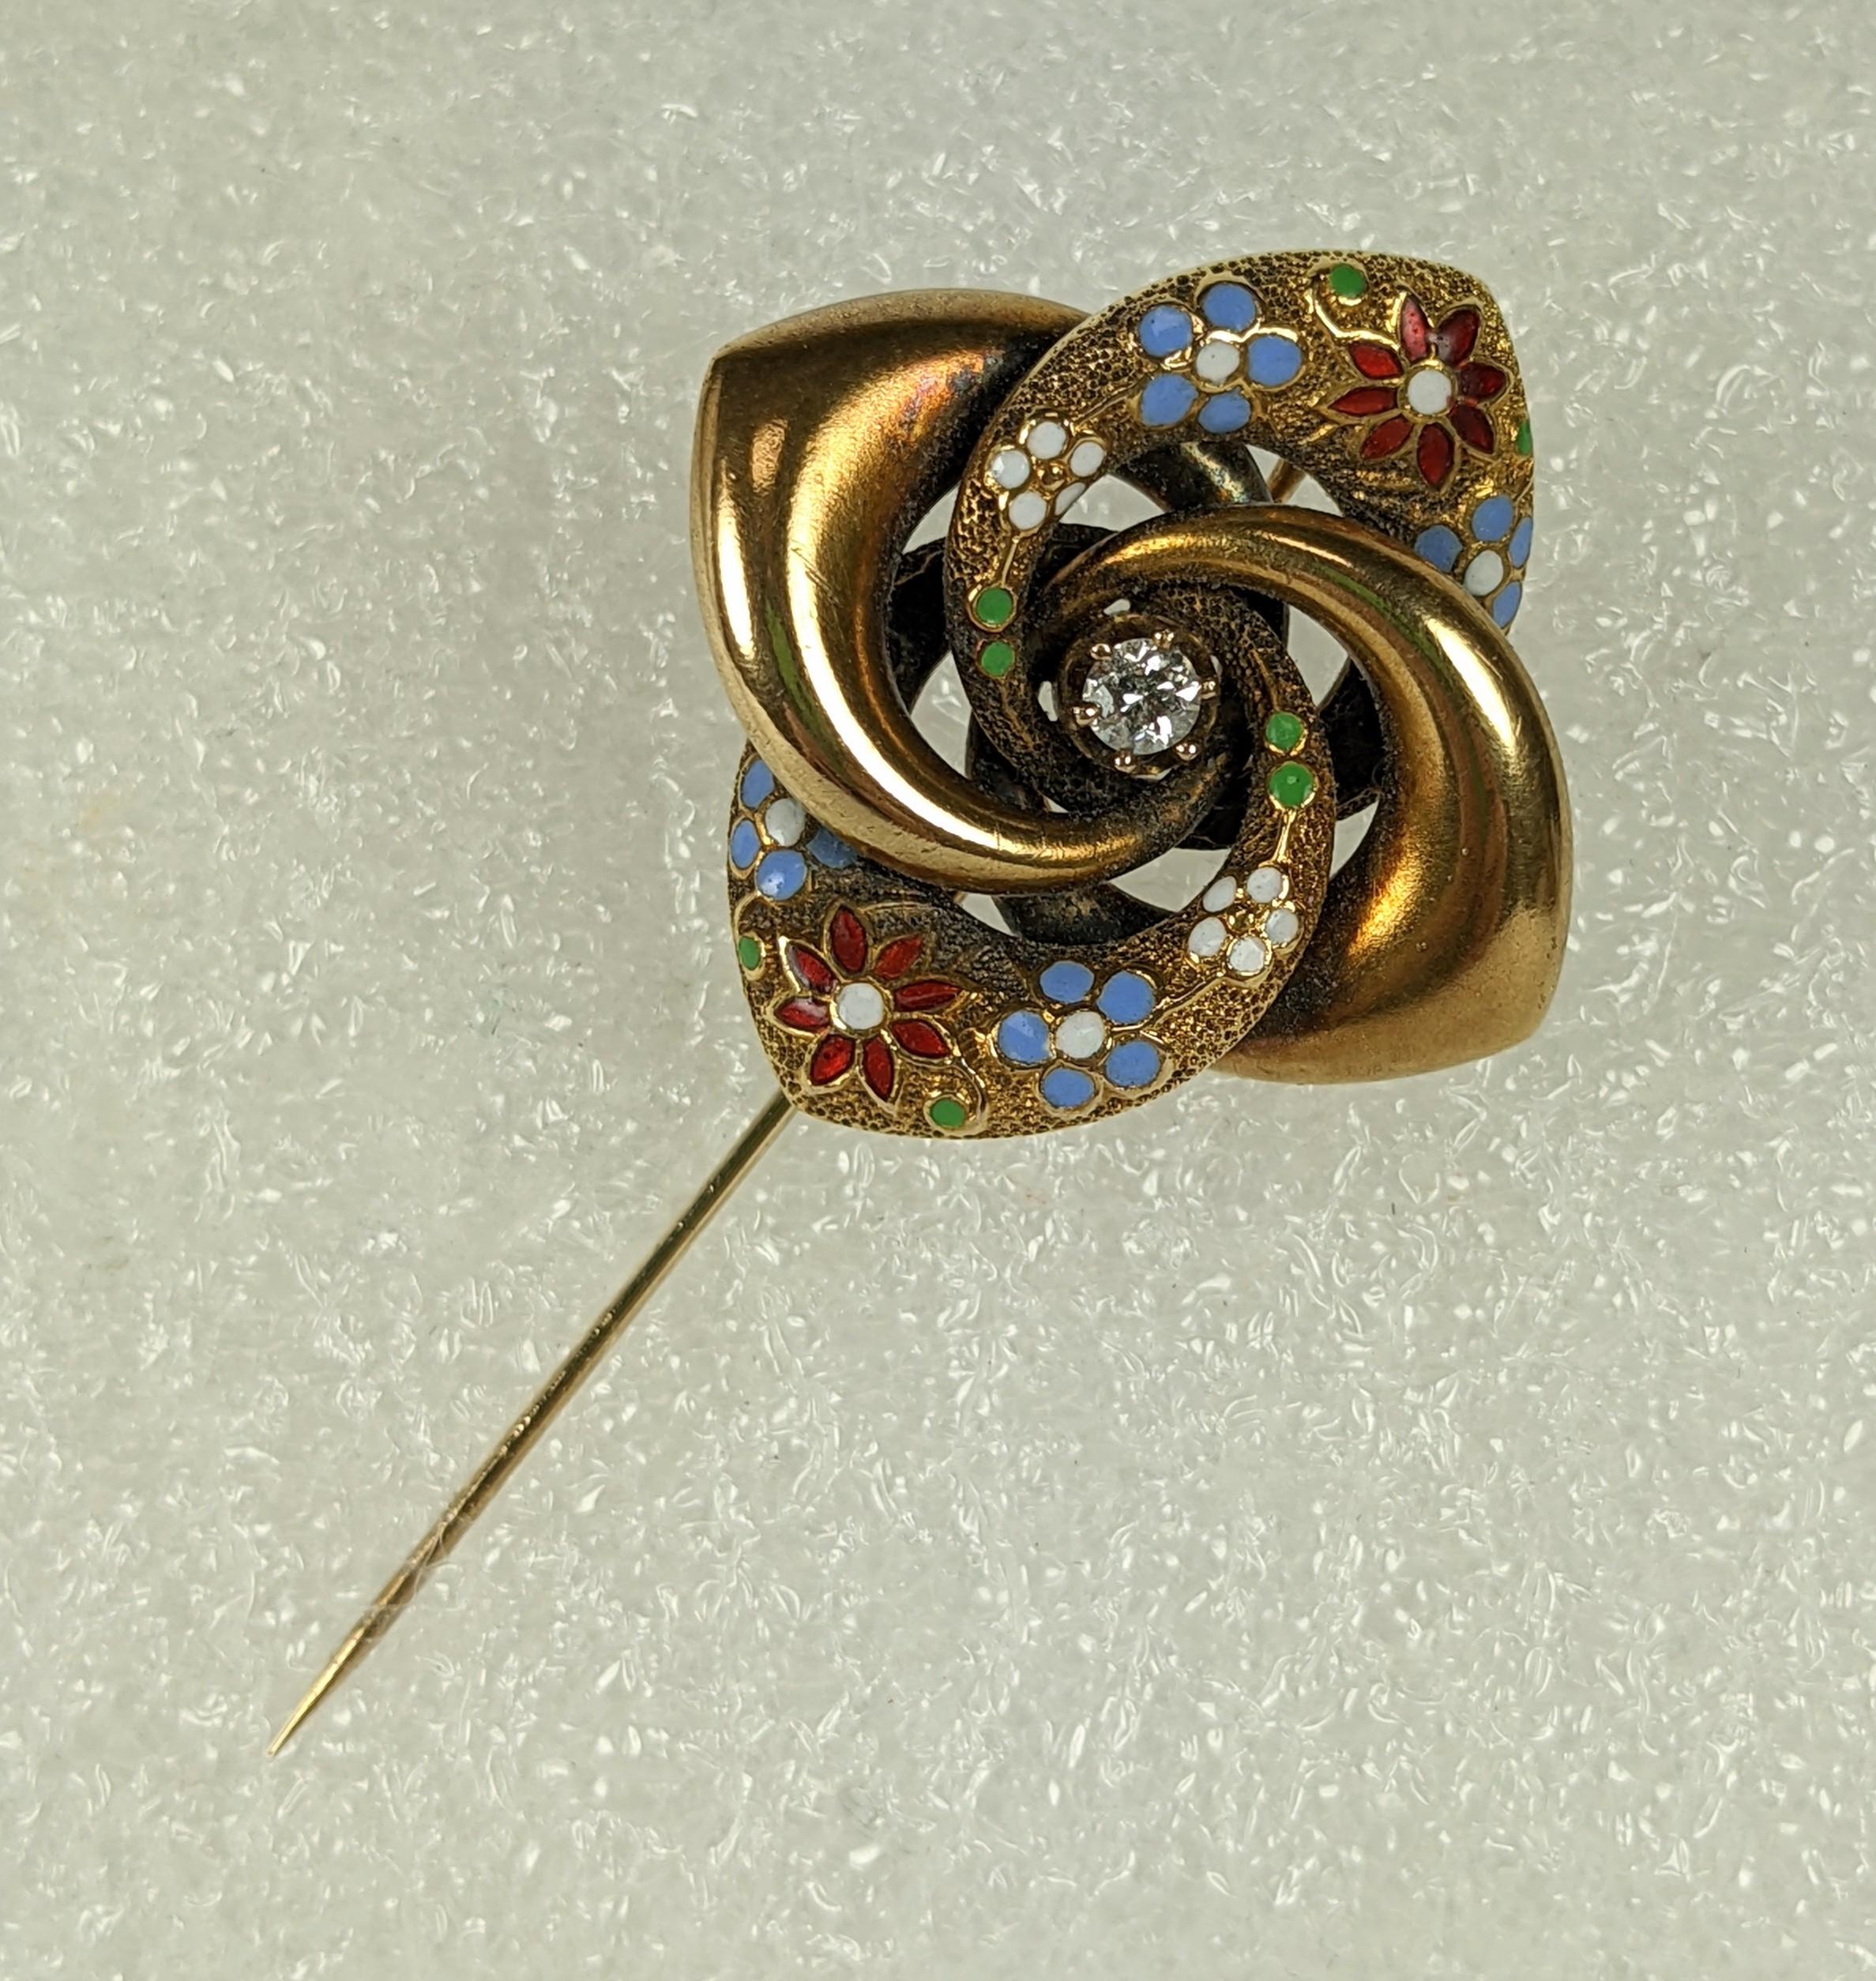 Große viktorianische Emaille und Diamant Pinwheel Stickpin in 14k aus dem späten 19. Jahrhundert. Ursprünglich eine Brosche, die später in eine Anstecknadel umgewandelt wurde. Fein emailliert mit roten, blauen und weißen Blumen. 1870 USA. 1.25